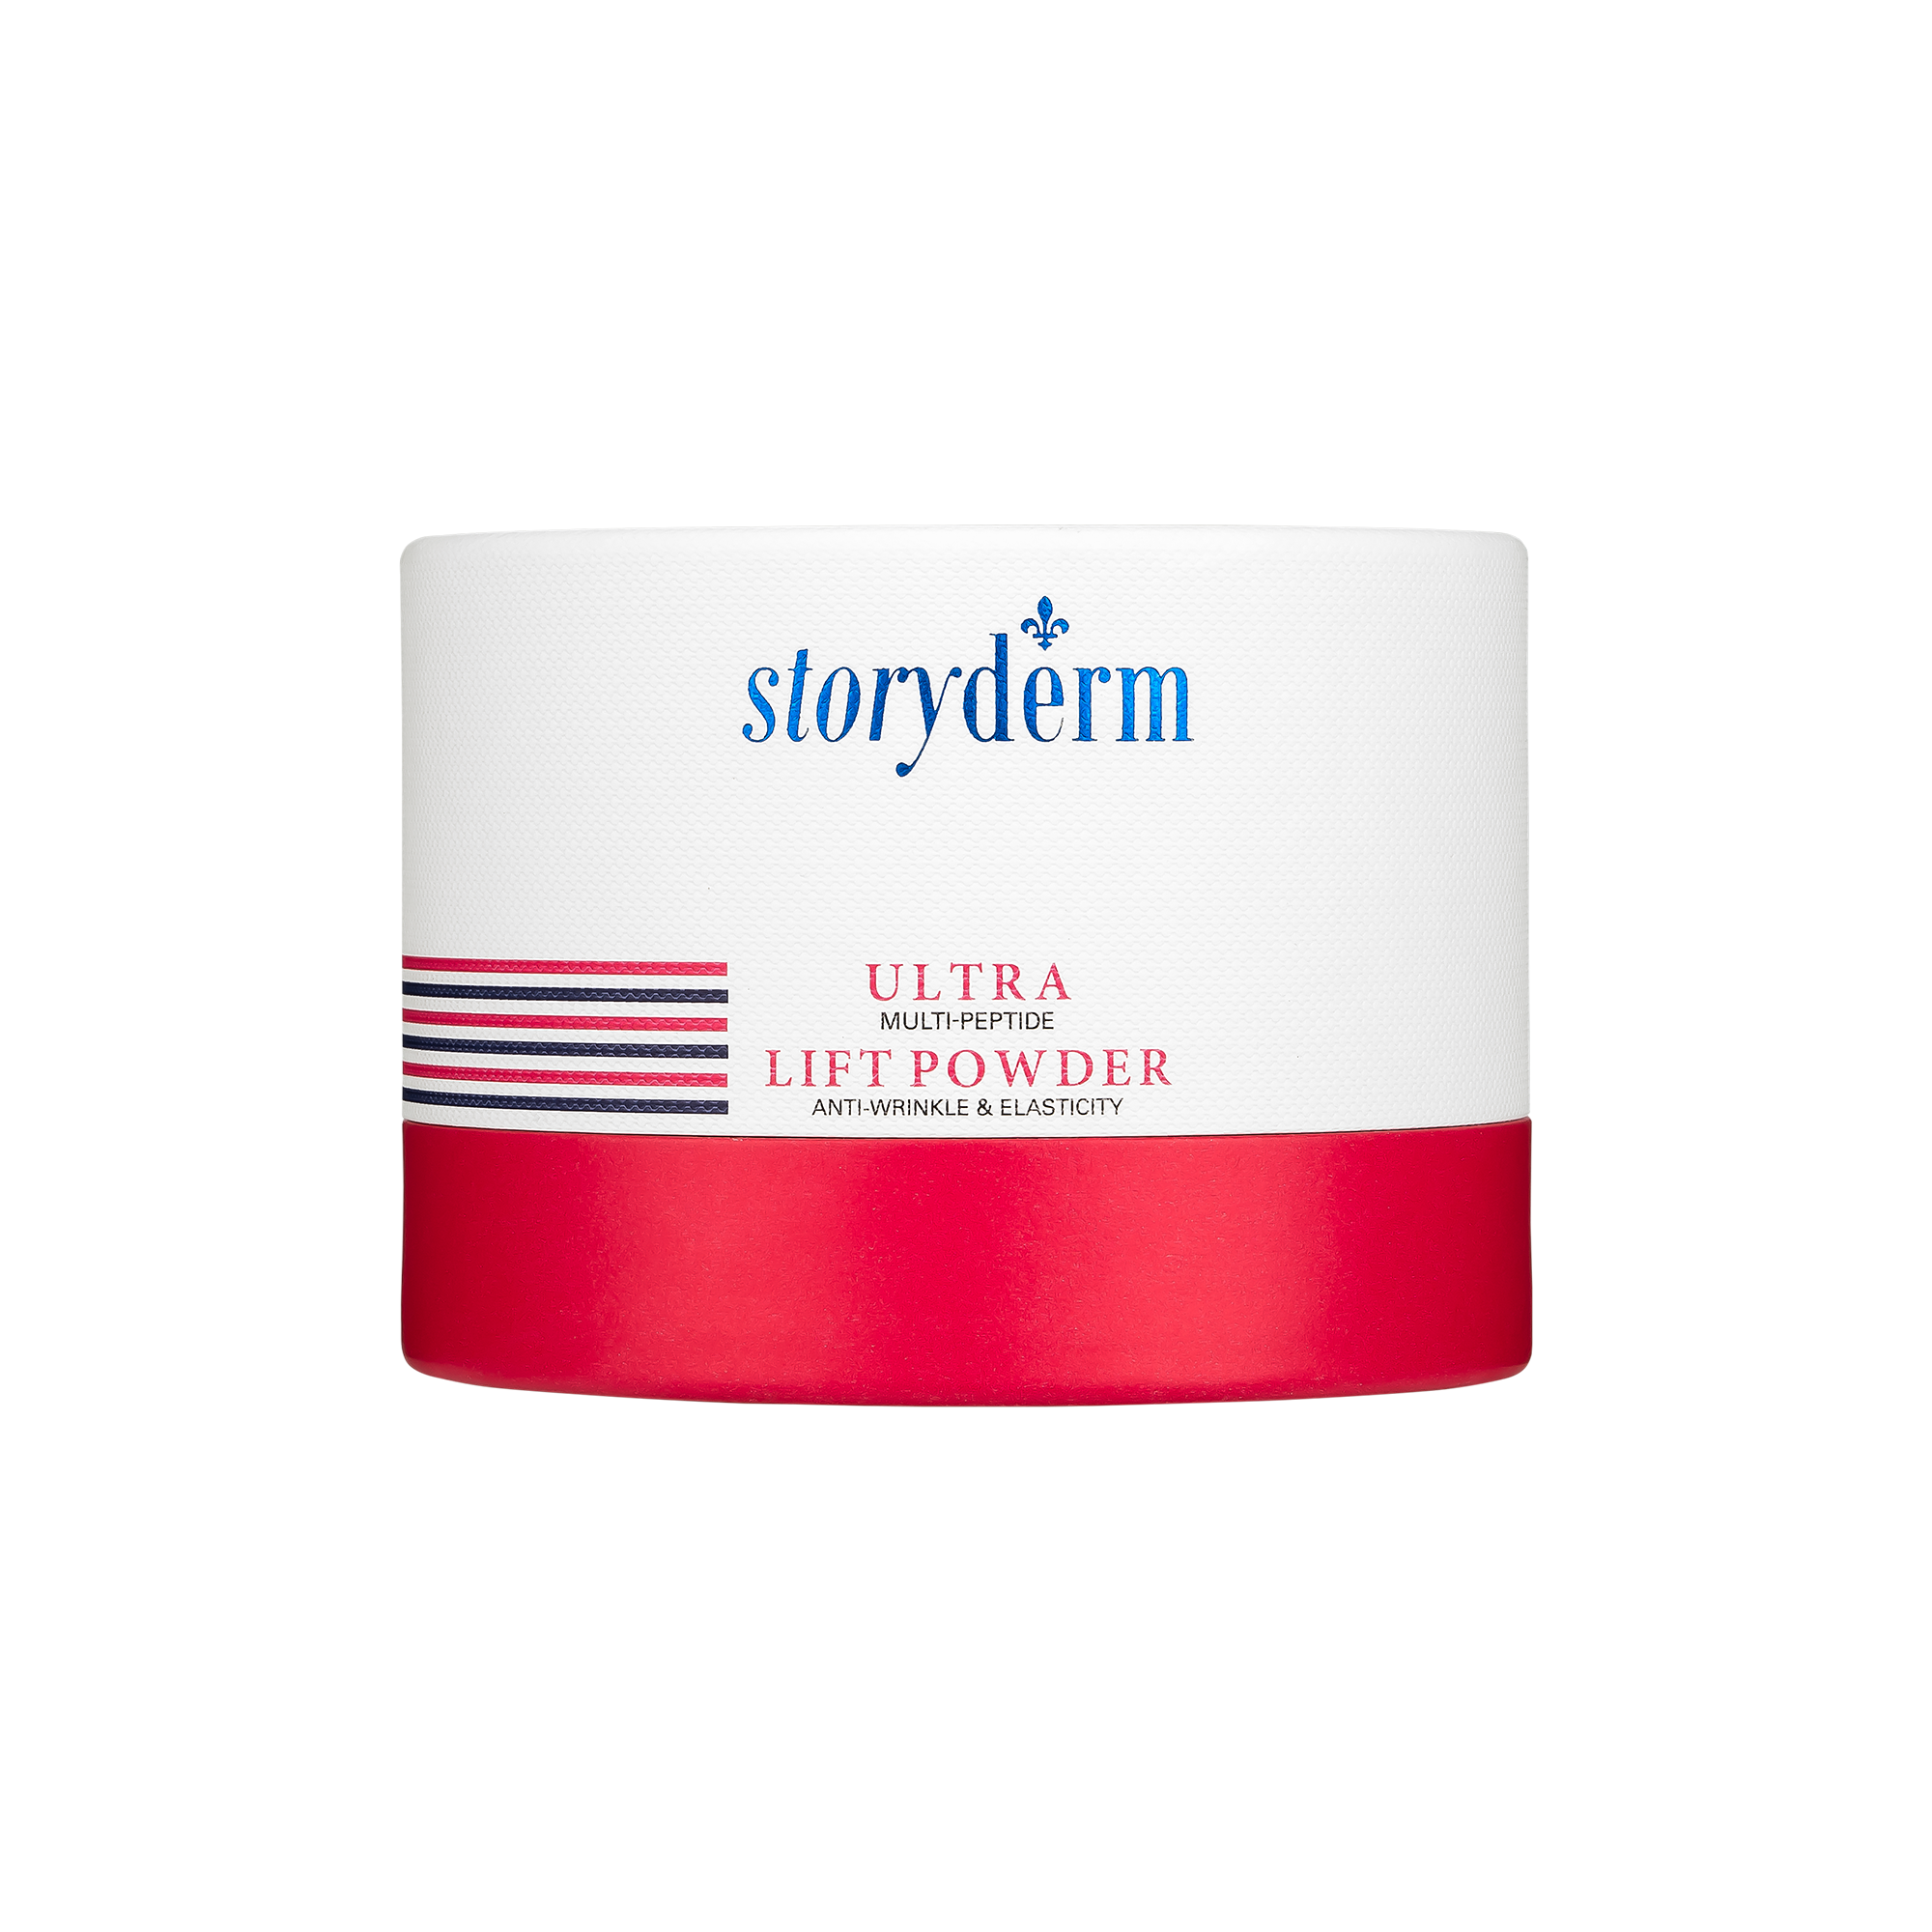 Набор масок с лифтинг эффектом Storyderm Ultra Lift Powder, 4 шт по 1,5г derma factory косметический порошок 100% ниацинамида niacinamide powder 9